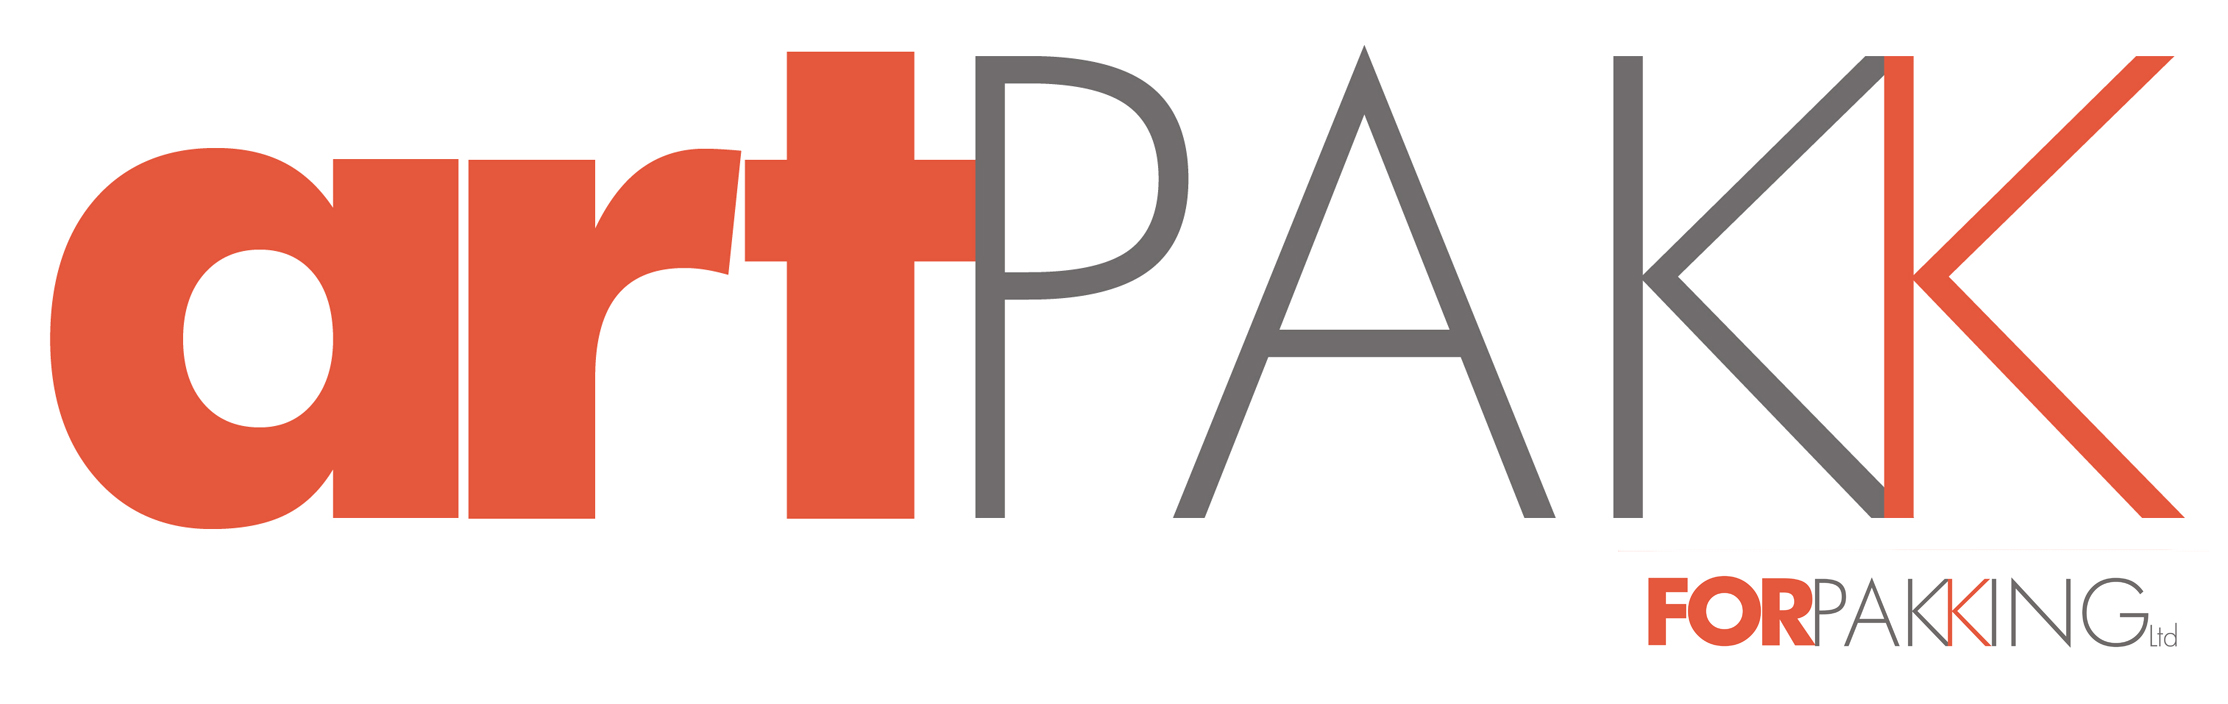 art-pakk-forpakking-logo.png